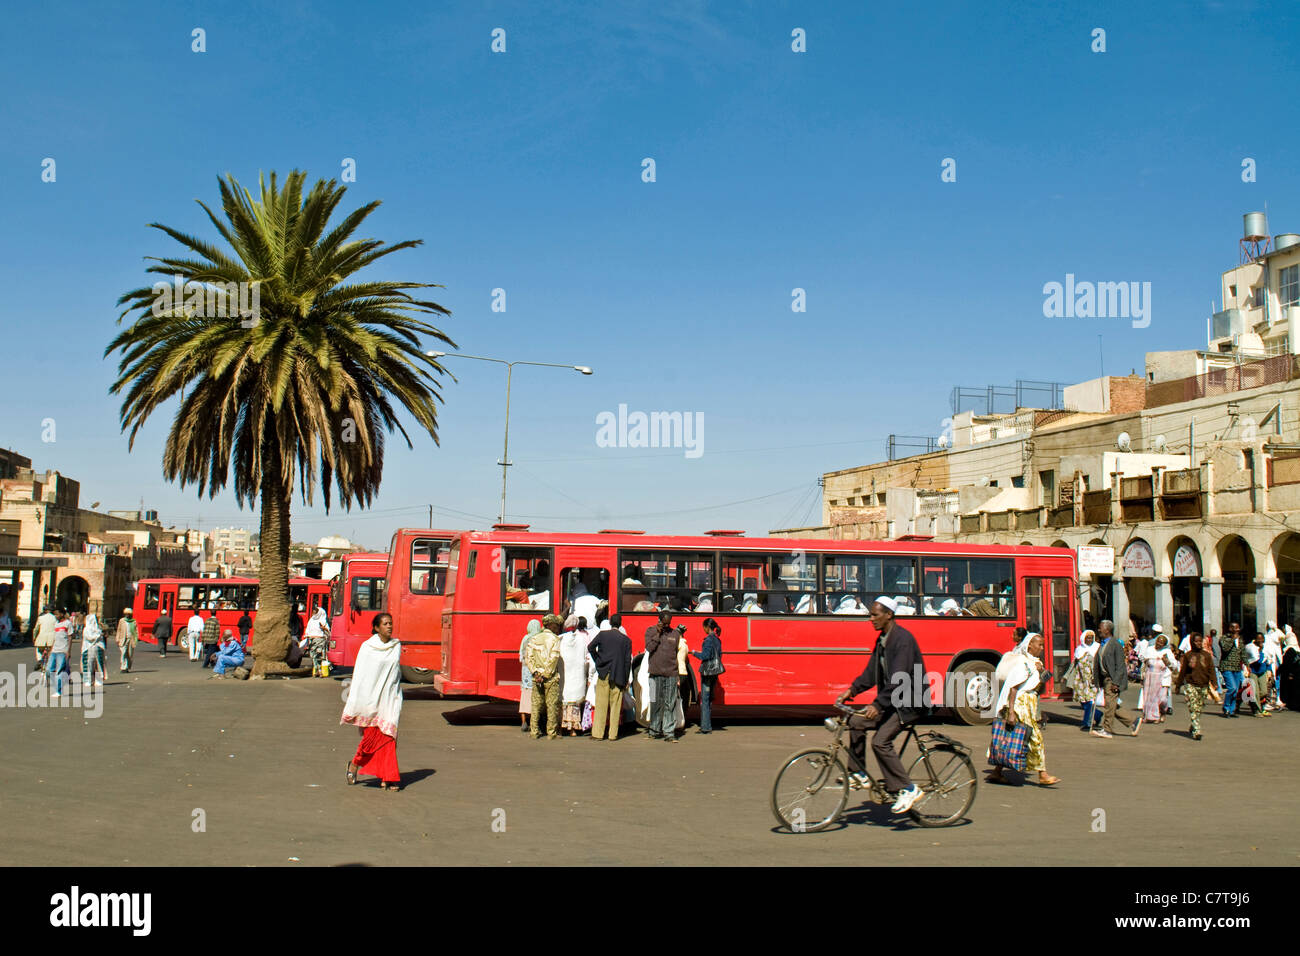 Africa, Eritrea, Asmara, street scene Stock Photo